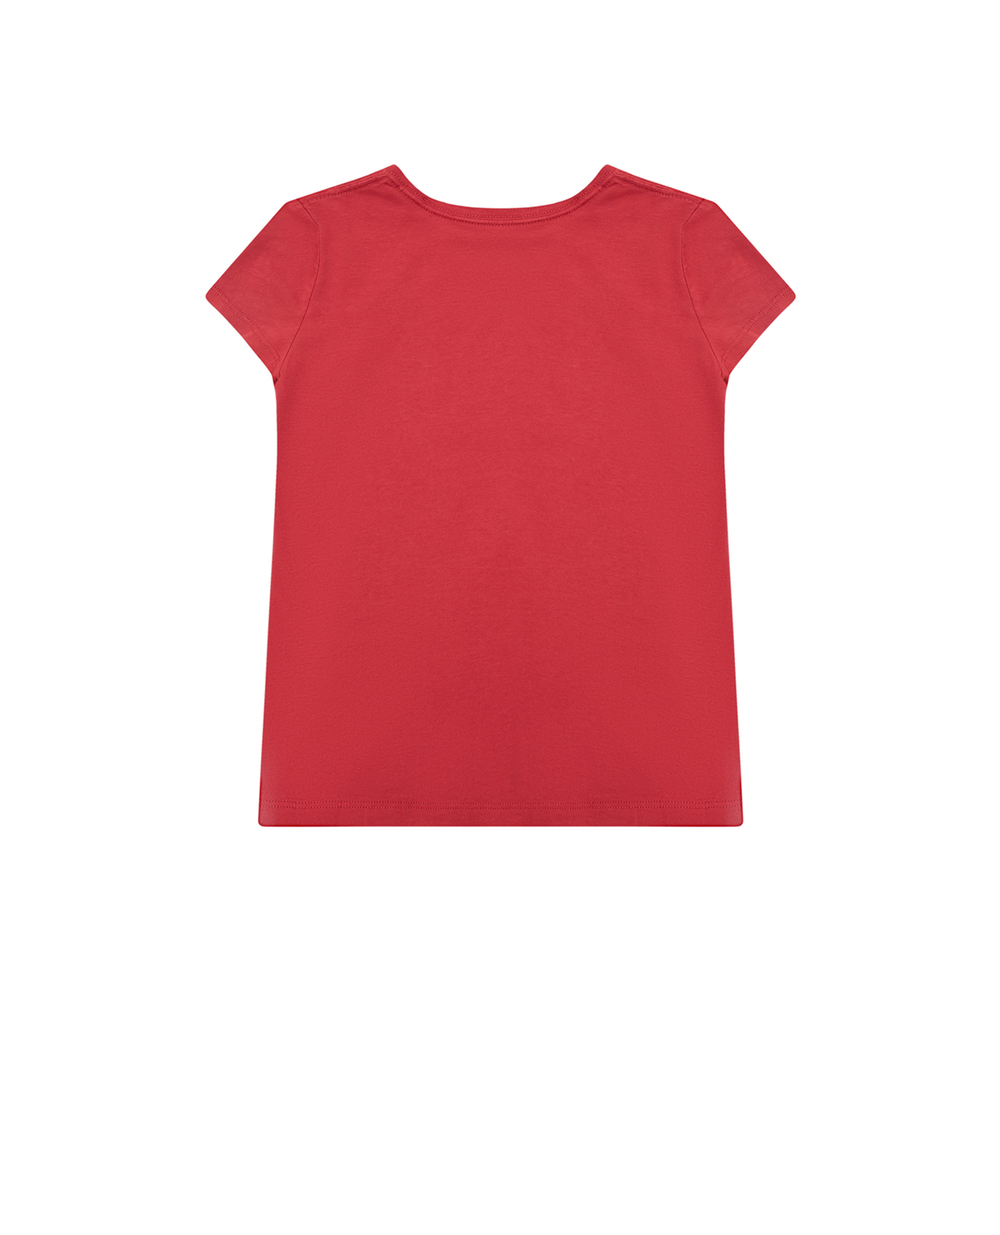 Дитяча футболка Polo Bear Polo Ralph Lauren Kids 313890235003, красный колір • Купити в інтернет-магазині Kameron